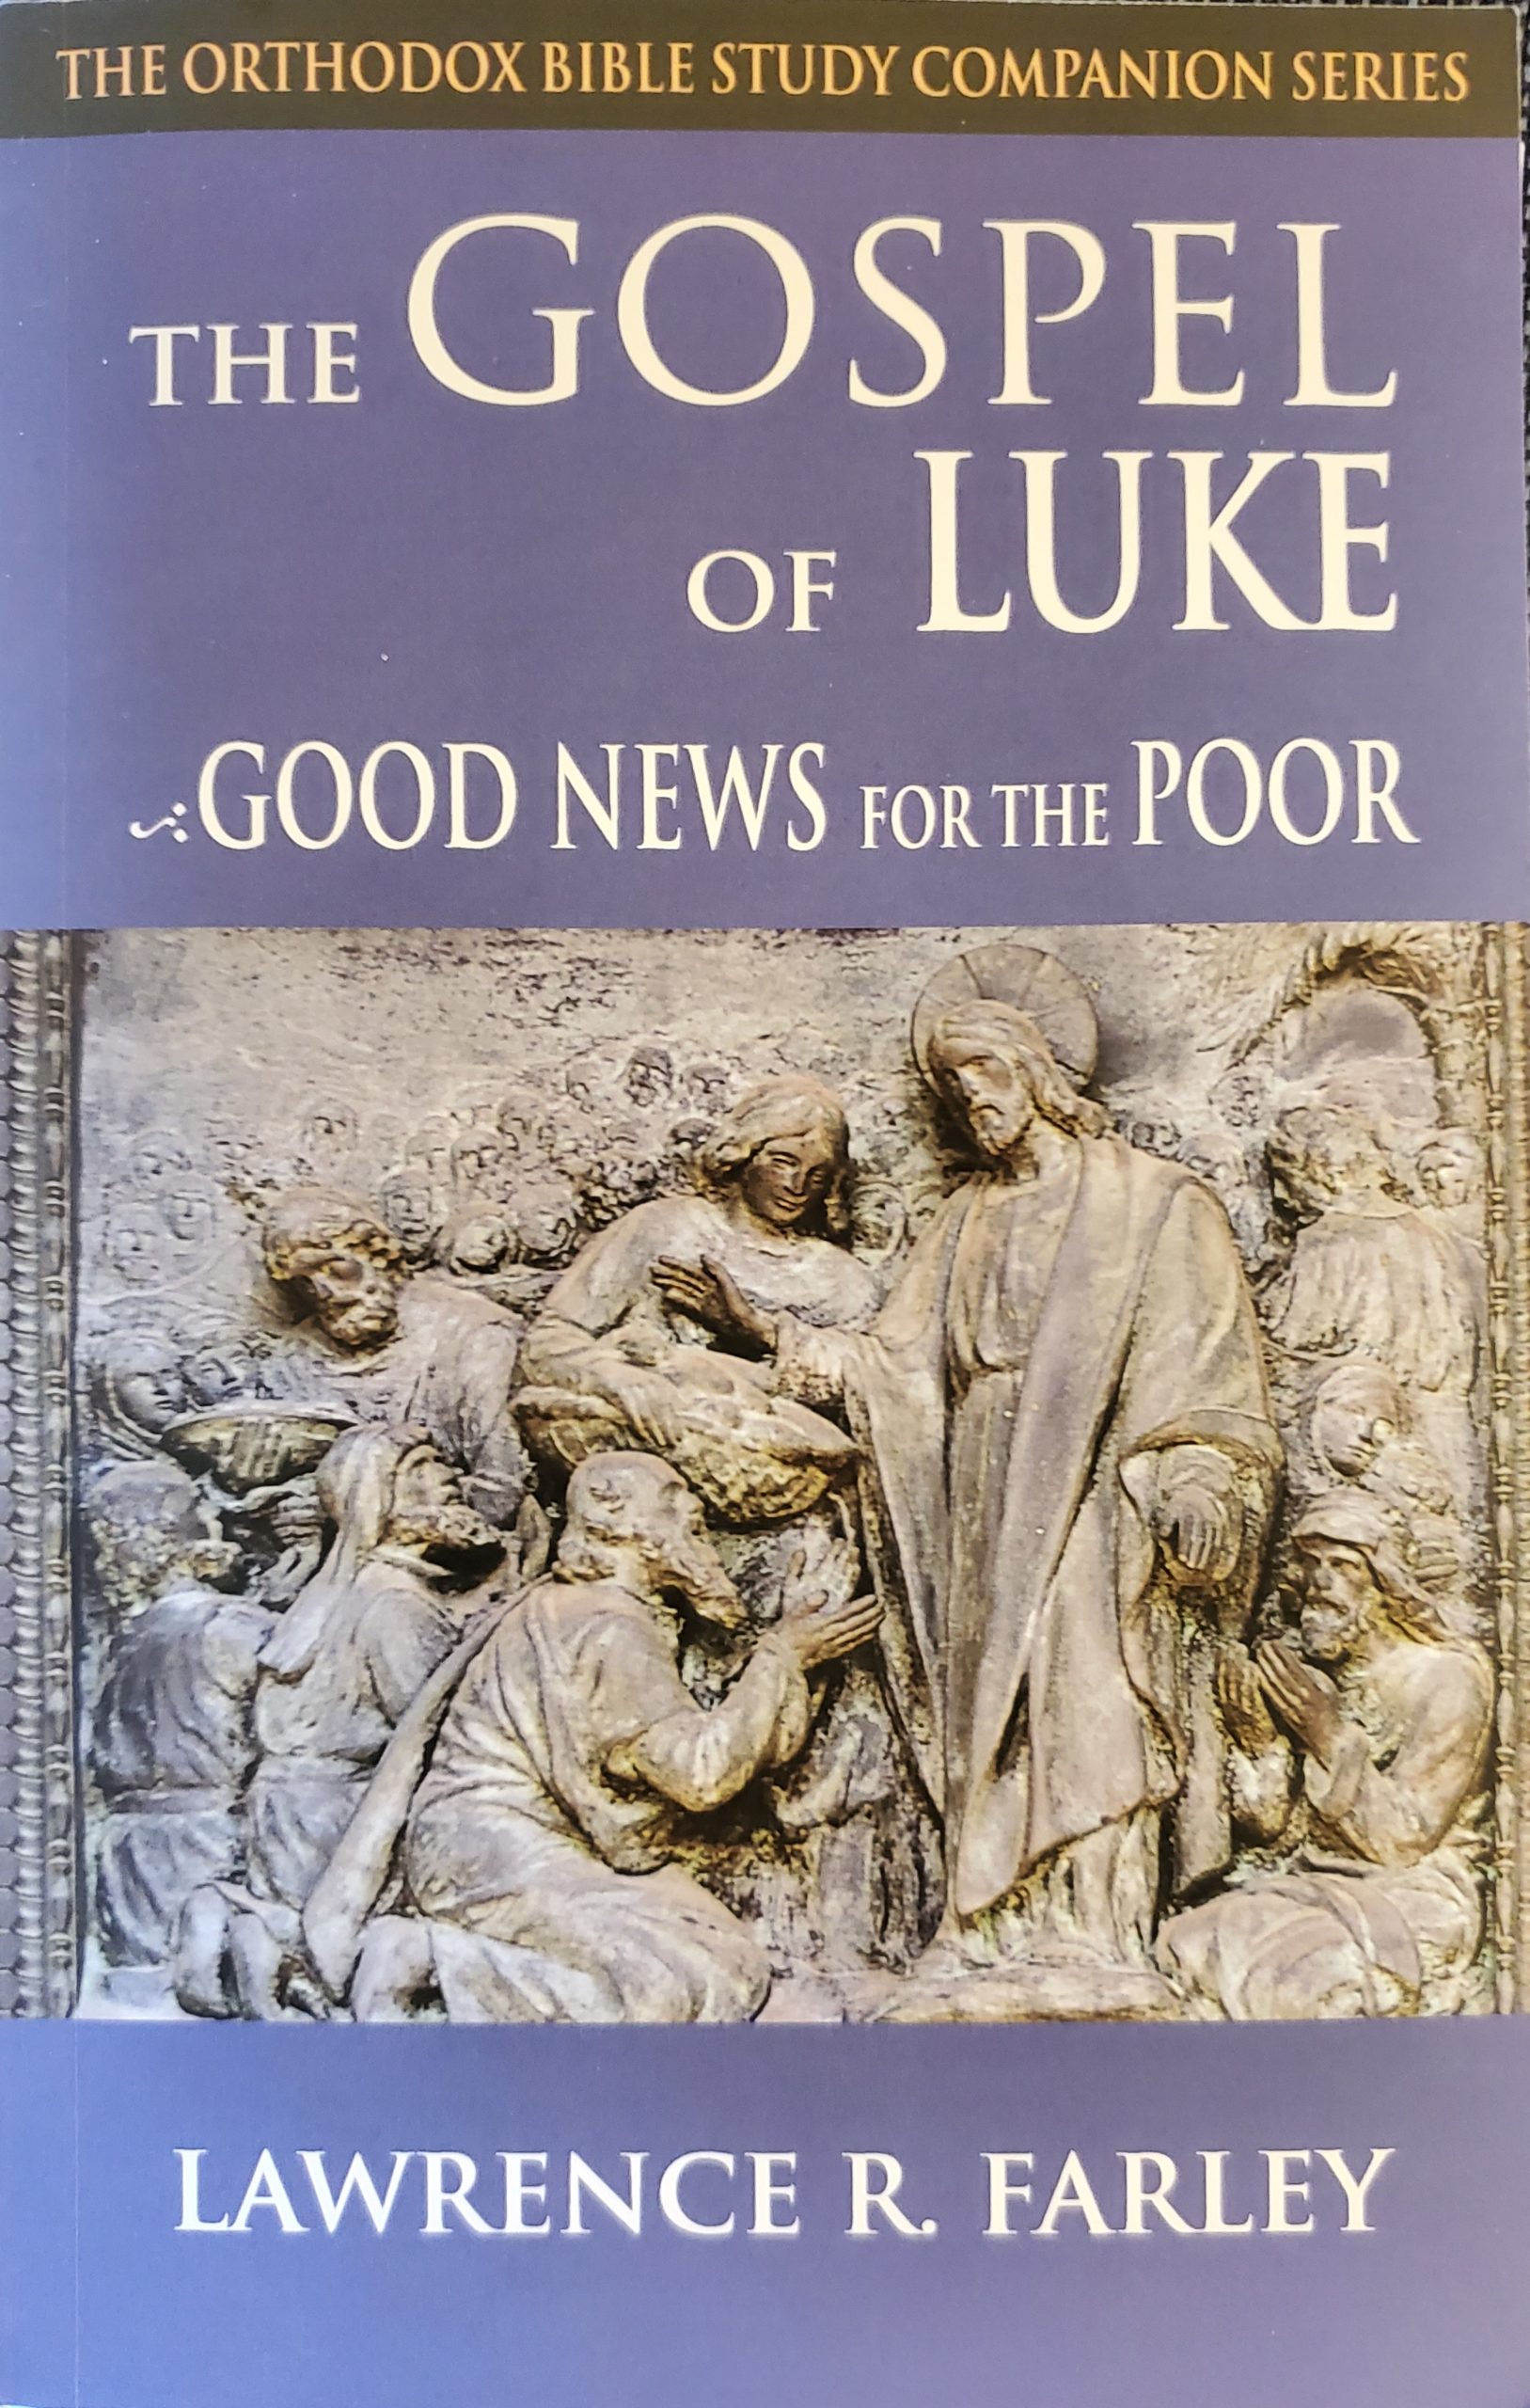 https://www.stgindy.org/wp-content/uploads/2021/12/Farley-Gospel-of-Luke-scaled.jpg